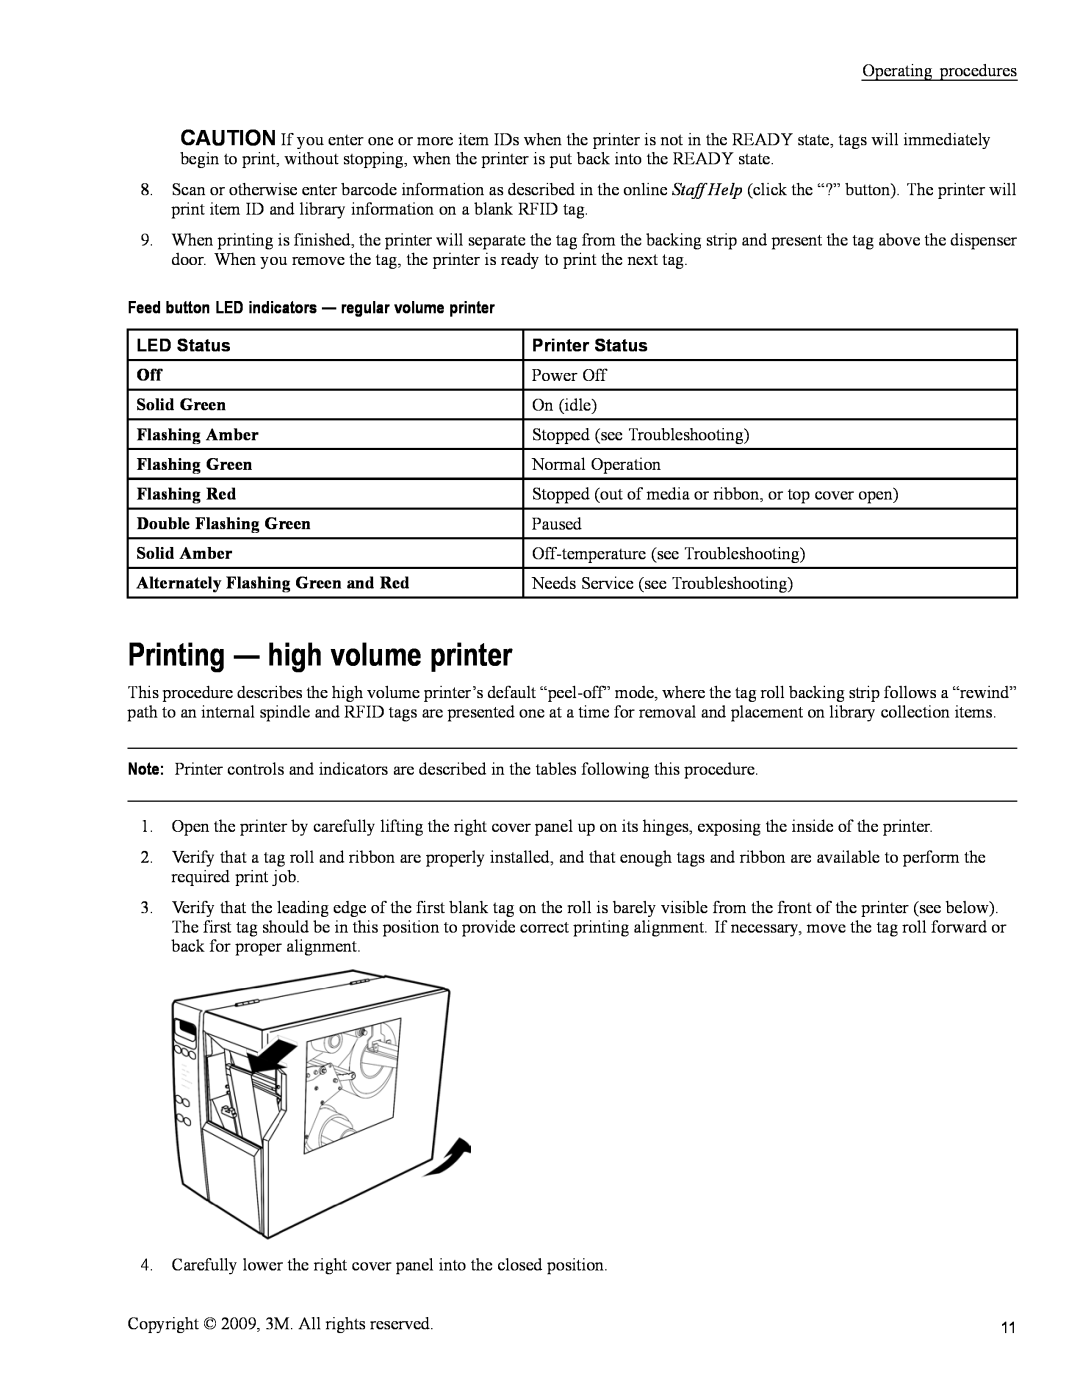 3M 813 Printing - high volume printer, Feed button LED indicators - regular volume printer, LED Status, Printer Status 